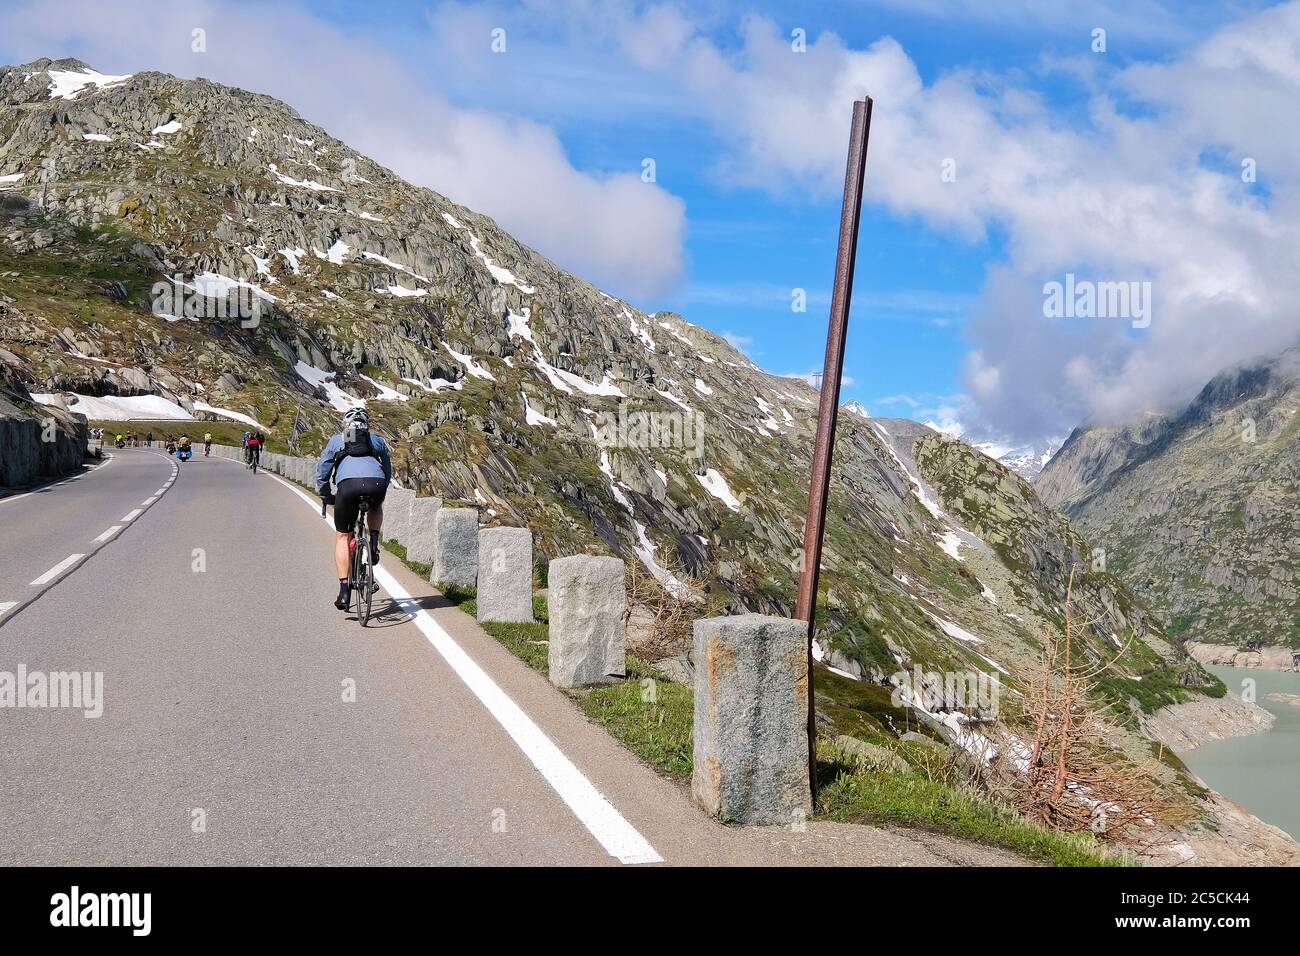 Cycliste sur le col Grimsel dans les Alpes suisses, qui relie l'Oberland bernois au Haut-Valais, en Suisse Banque D'Images